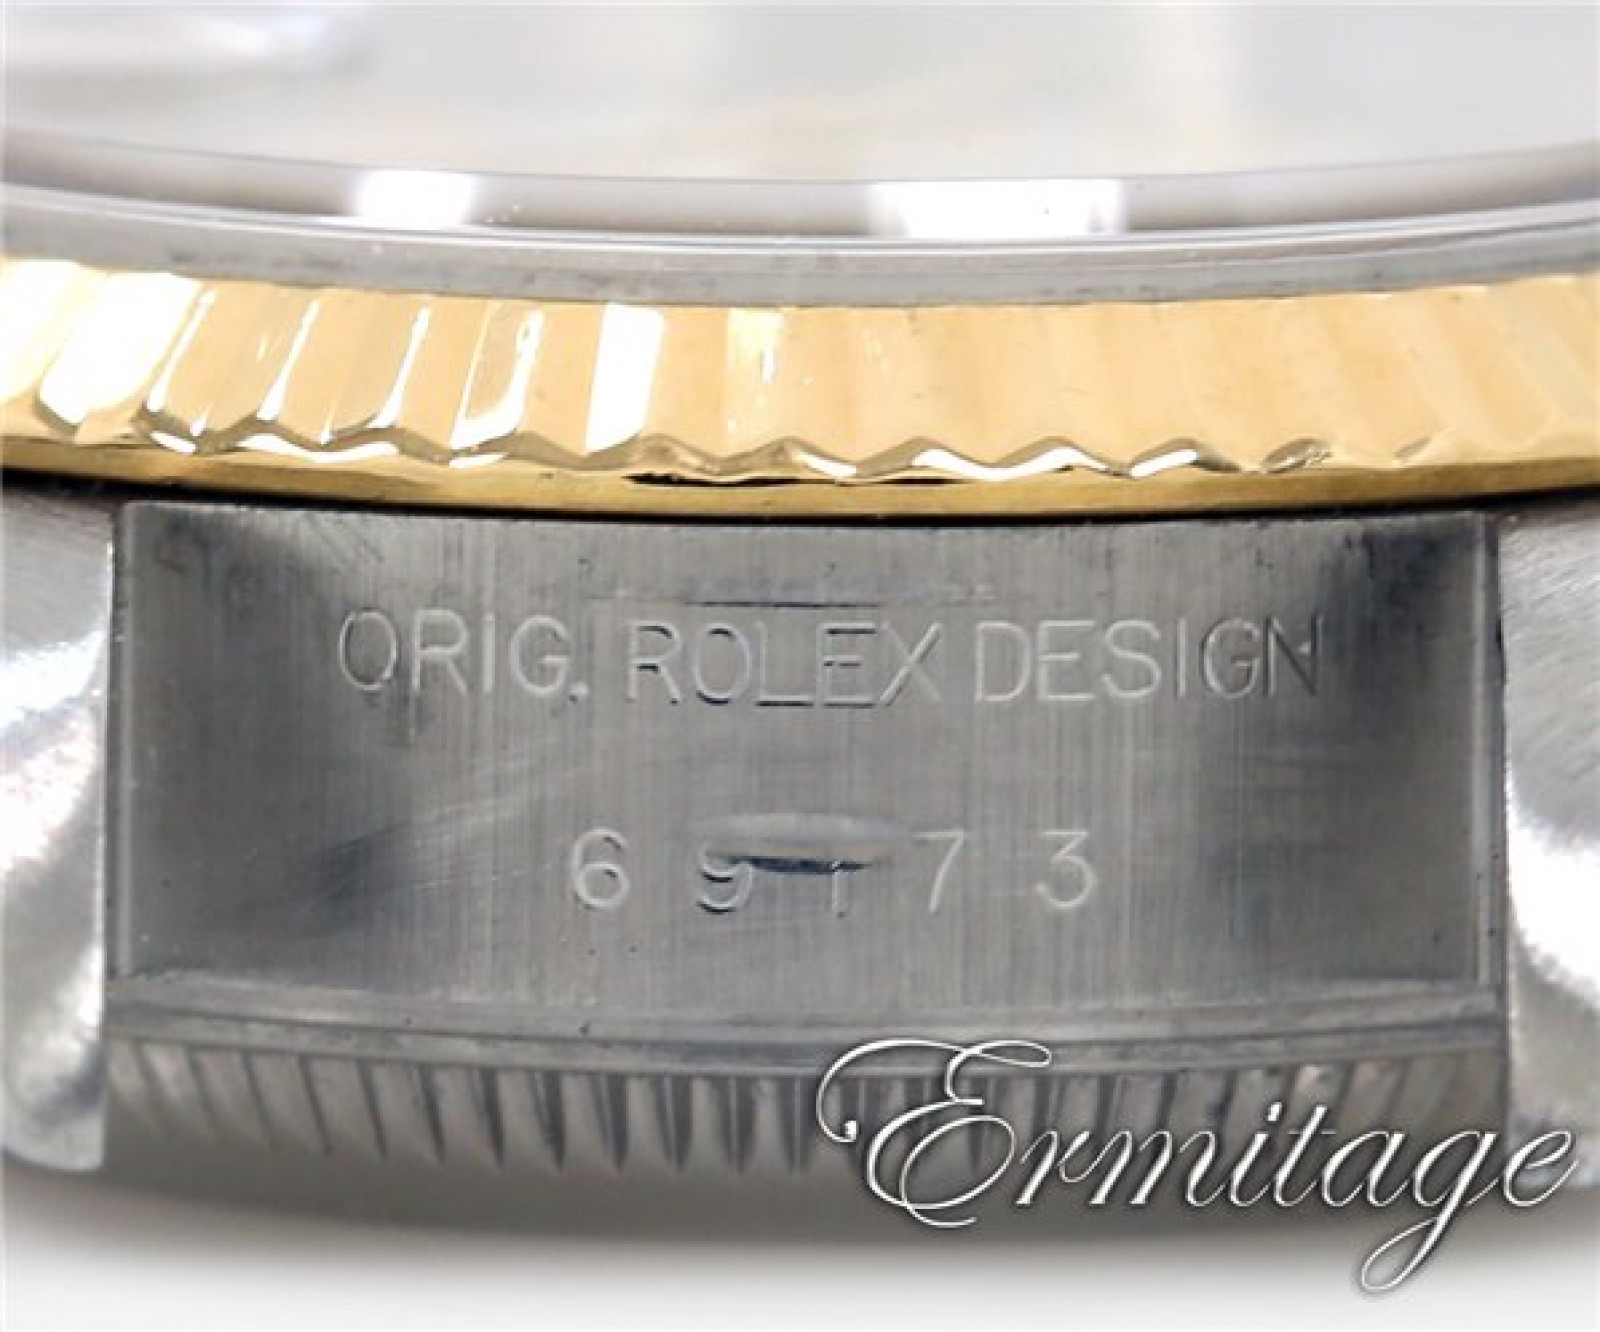 Rolex Datejust 69173 Gold & Steel White